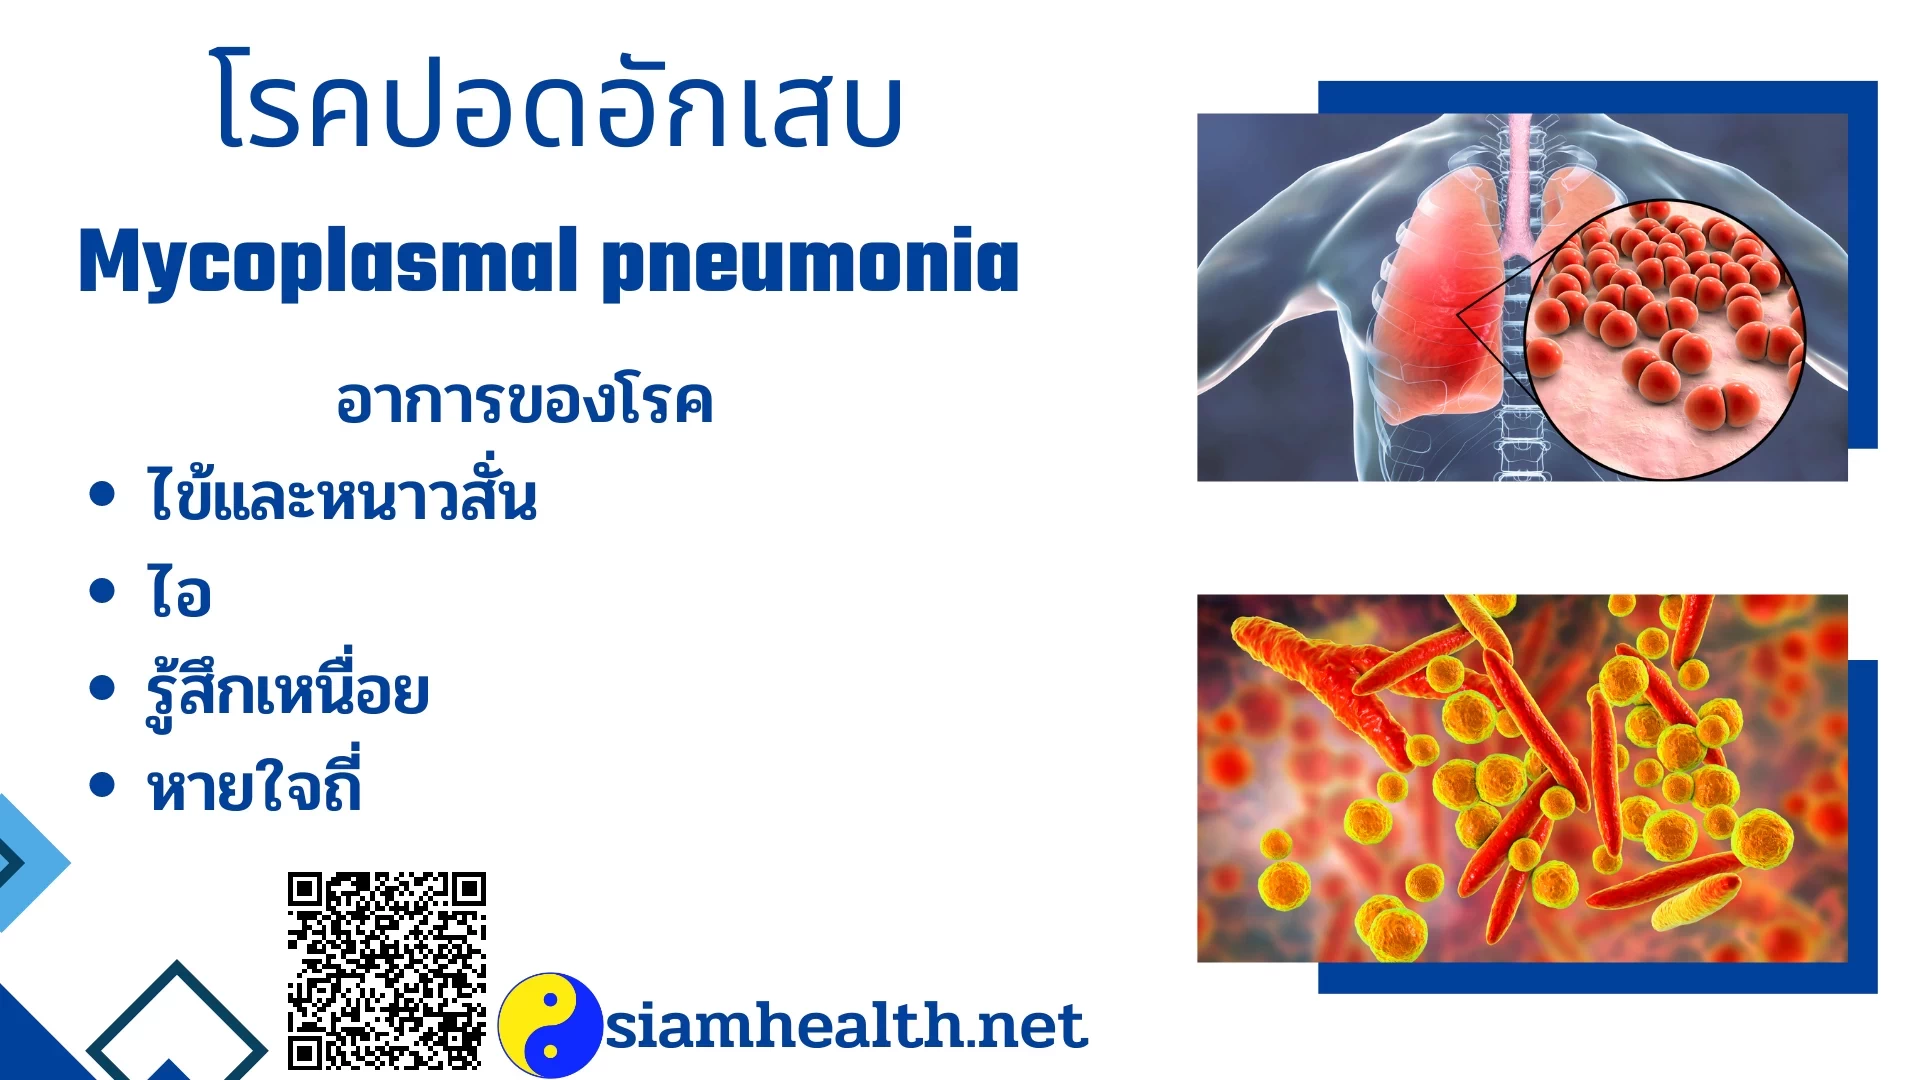 โรคปอดอักเสบ Mycoplasmal pneumonia